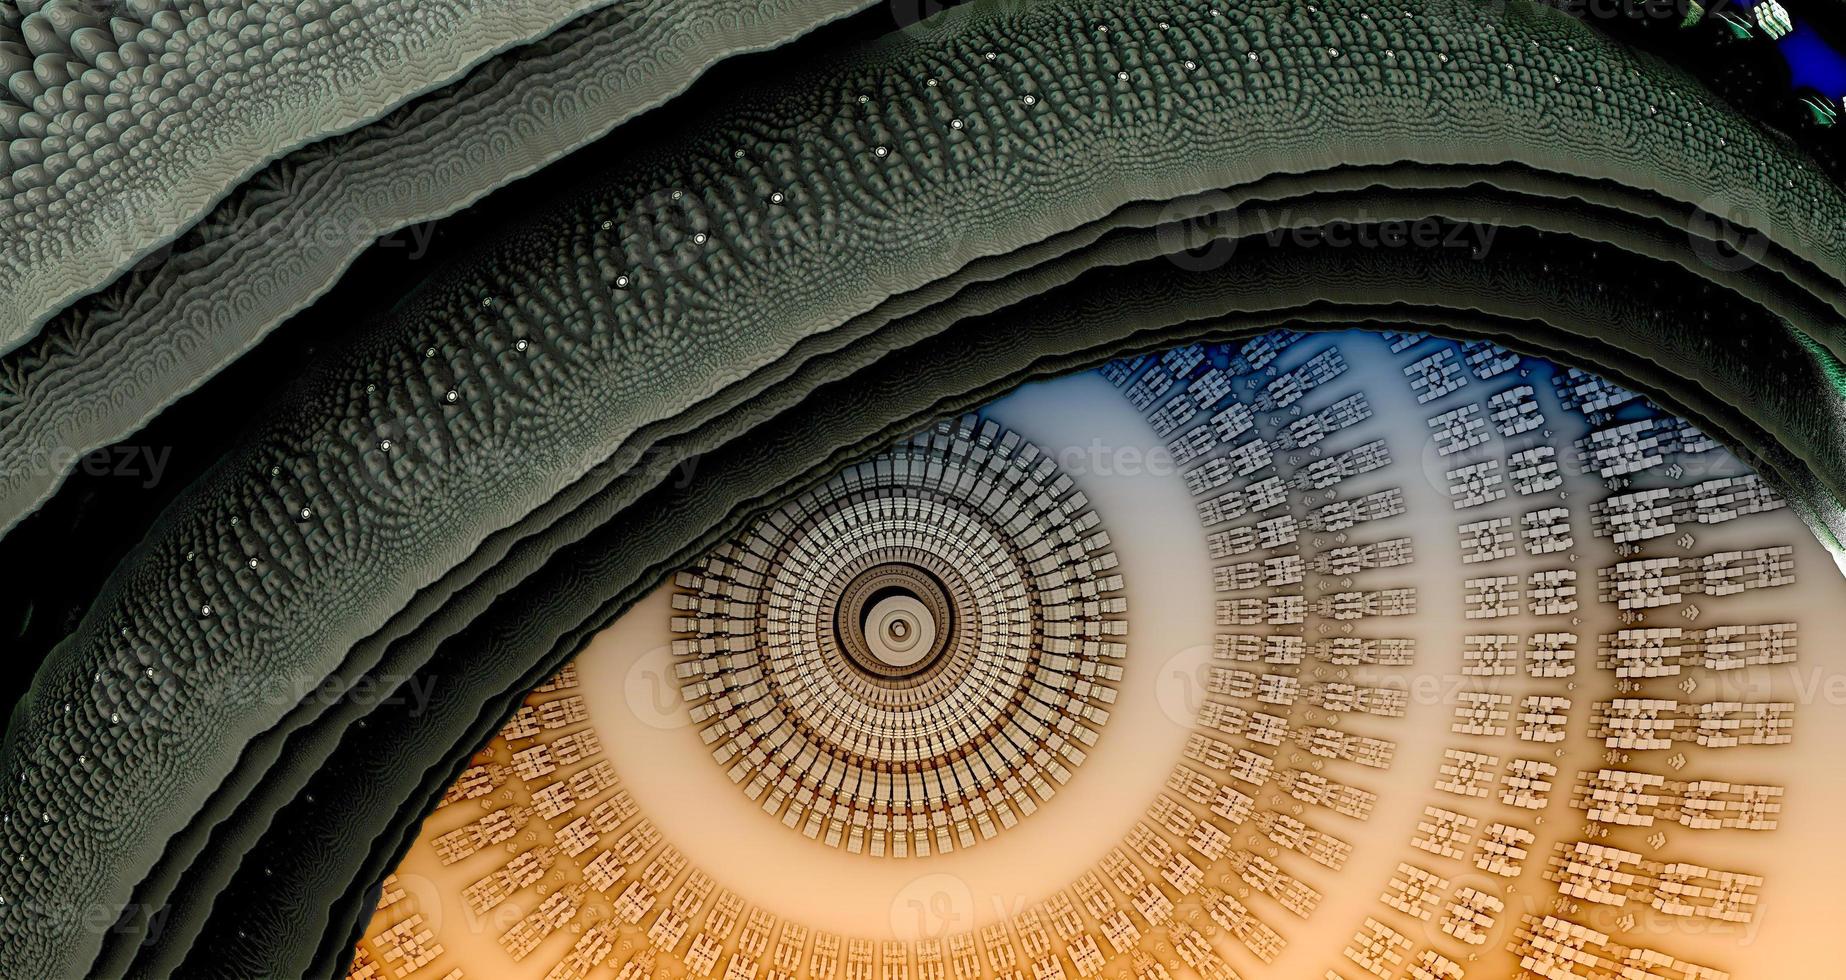 diseño fractal generado por ordenador abstracto. Ilustración de extraterrestres 3d de un hermoso mandelbrot matemático infinito establece fondo de ojo abstracto fractal foto